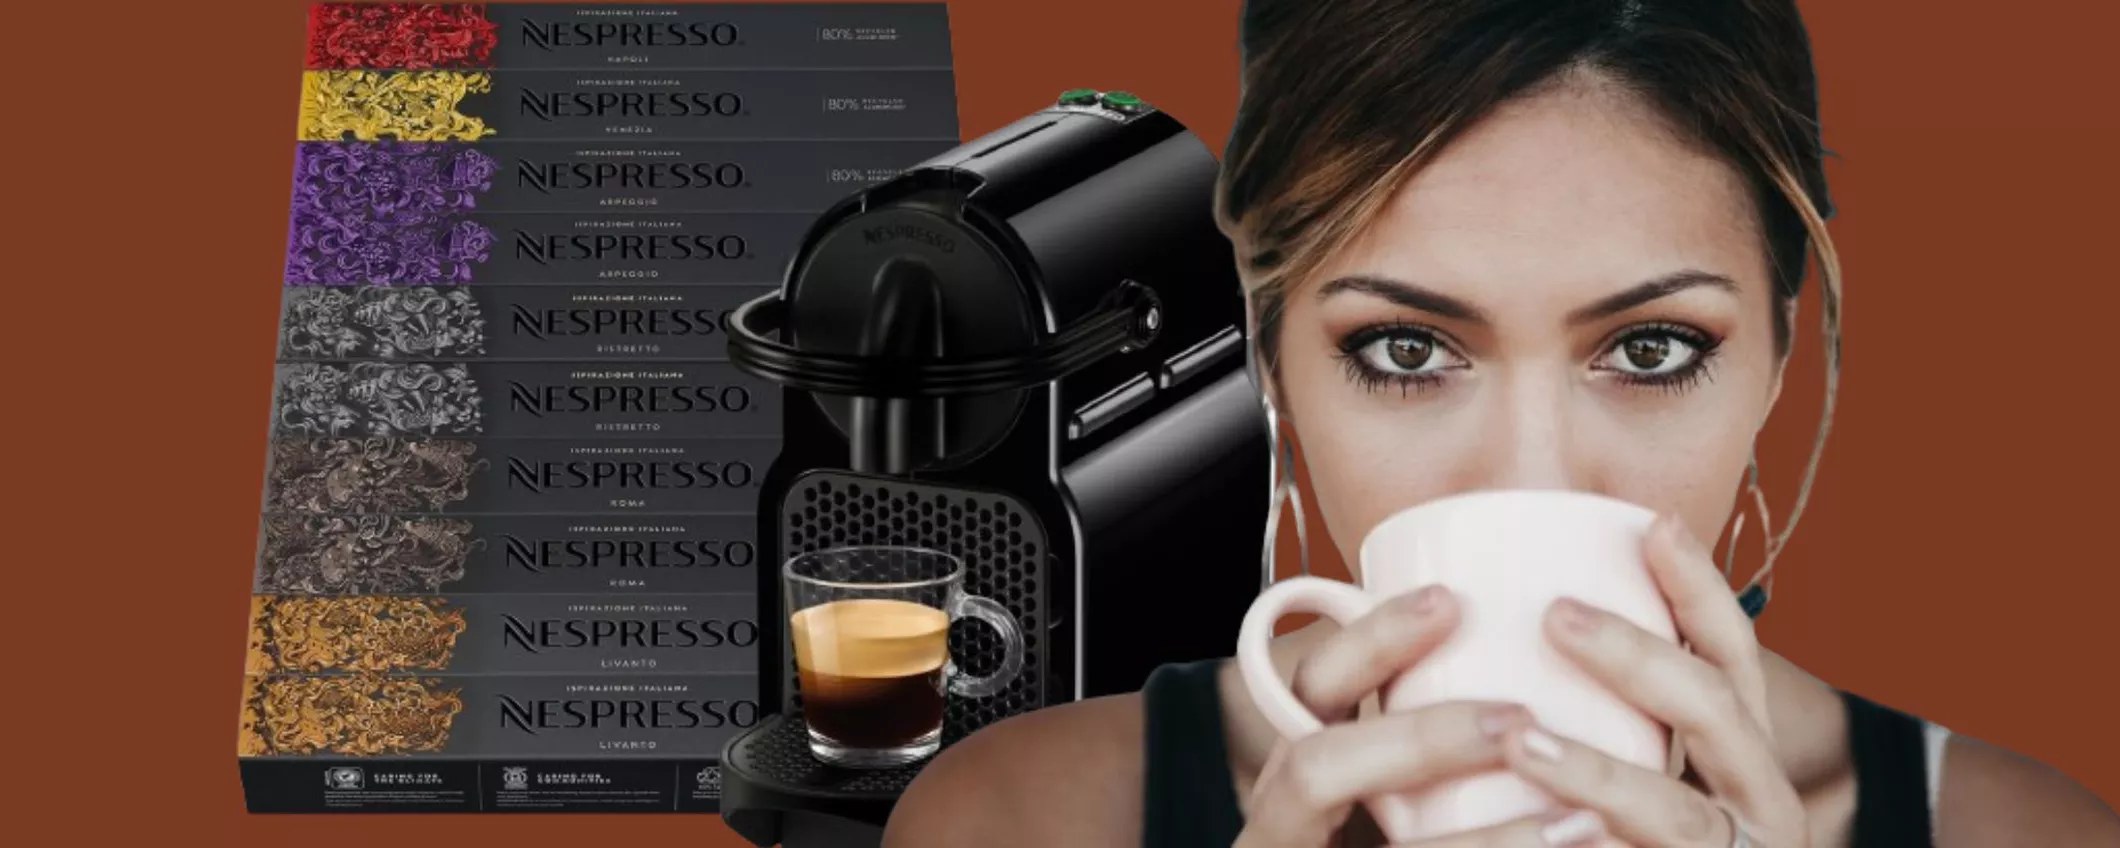 Macchina da caffè Nespresso Inissia + 100 capsule a soli 99,90€ su Amazon (offerta a tempo)